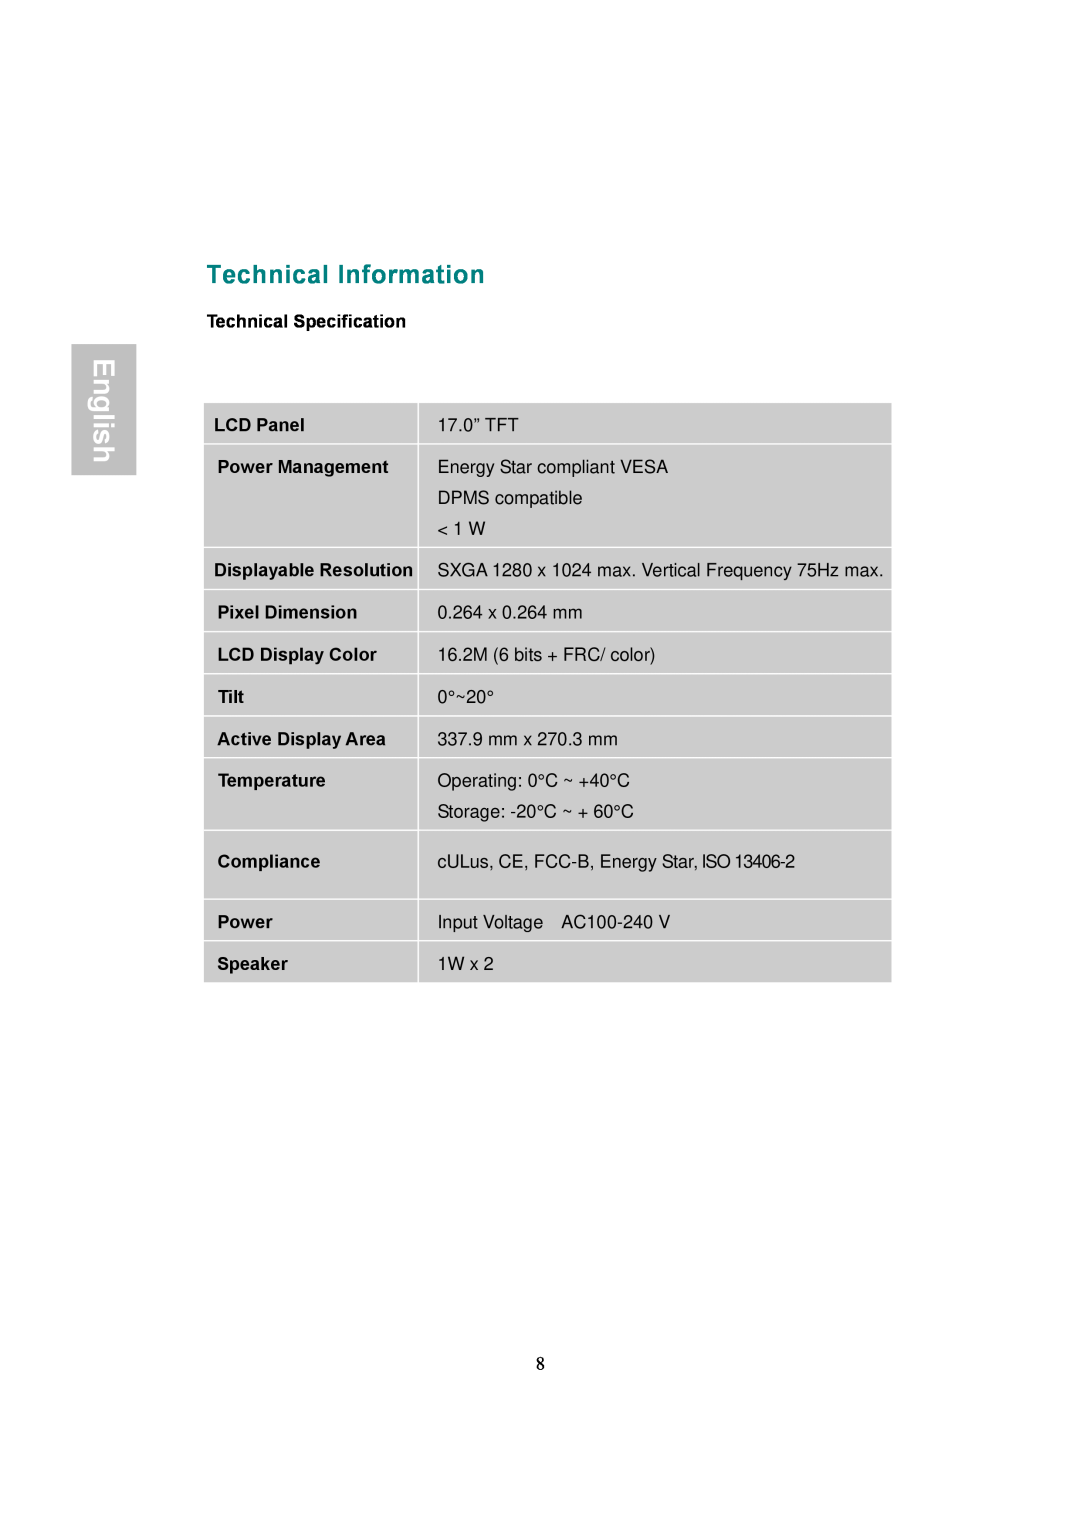 AOC 177Sa-1 manual Technical Information, English 